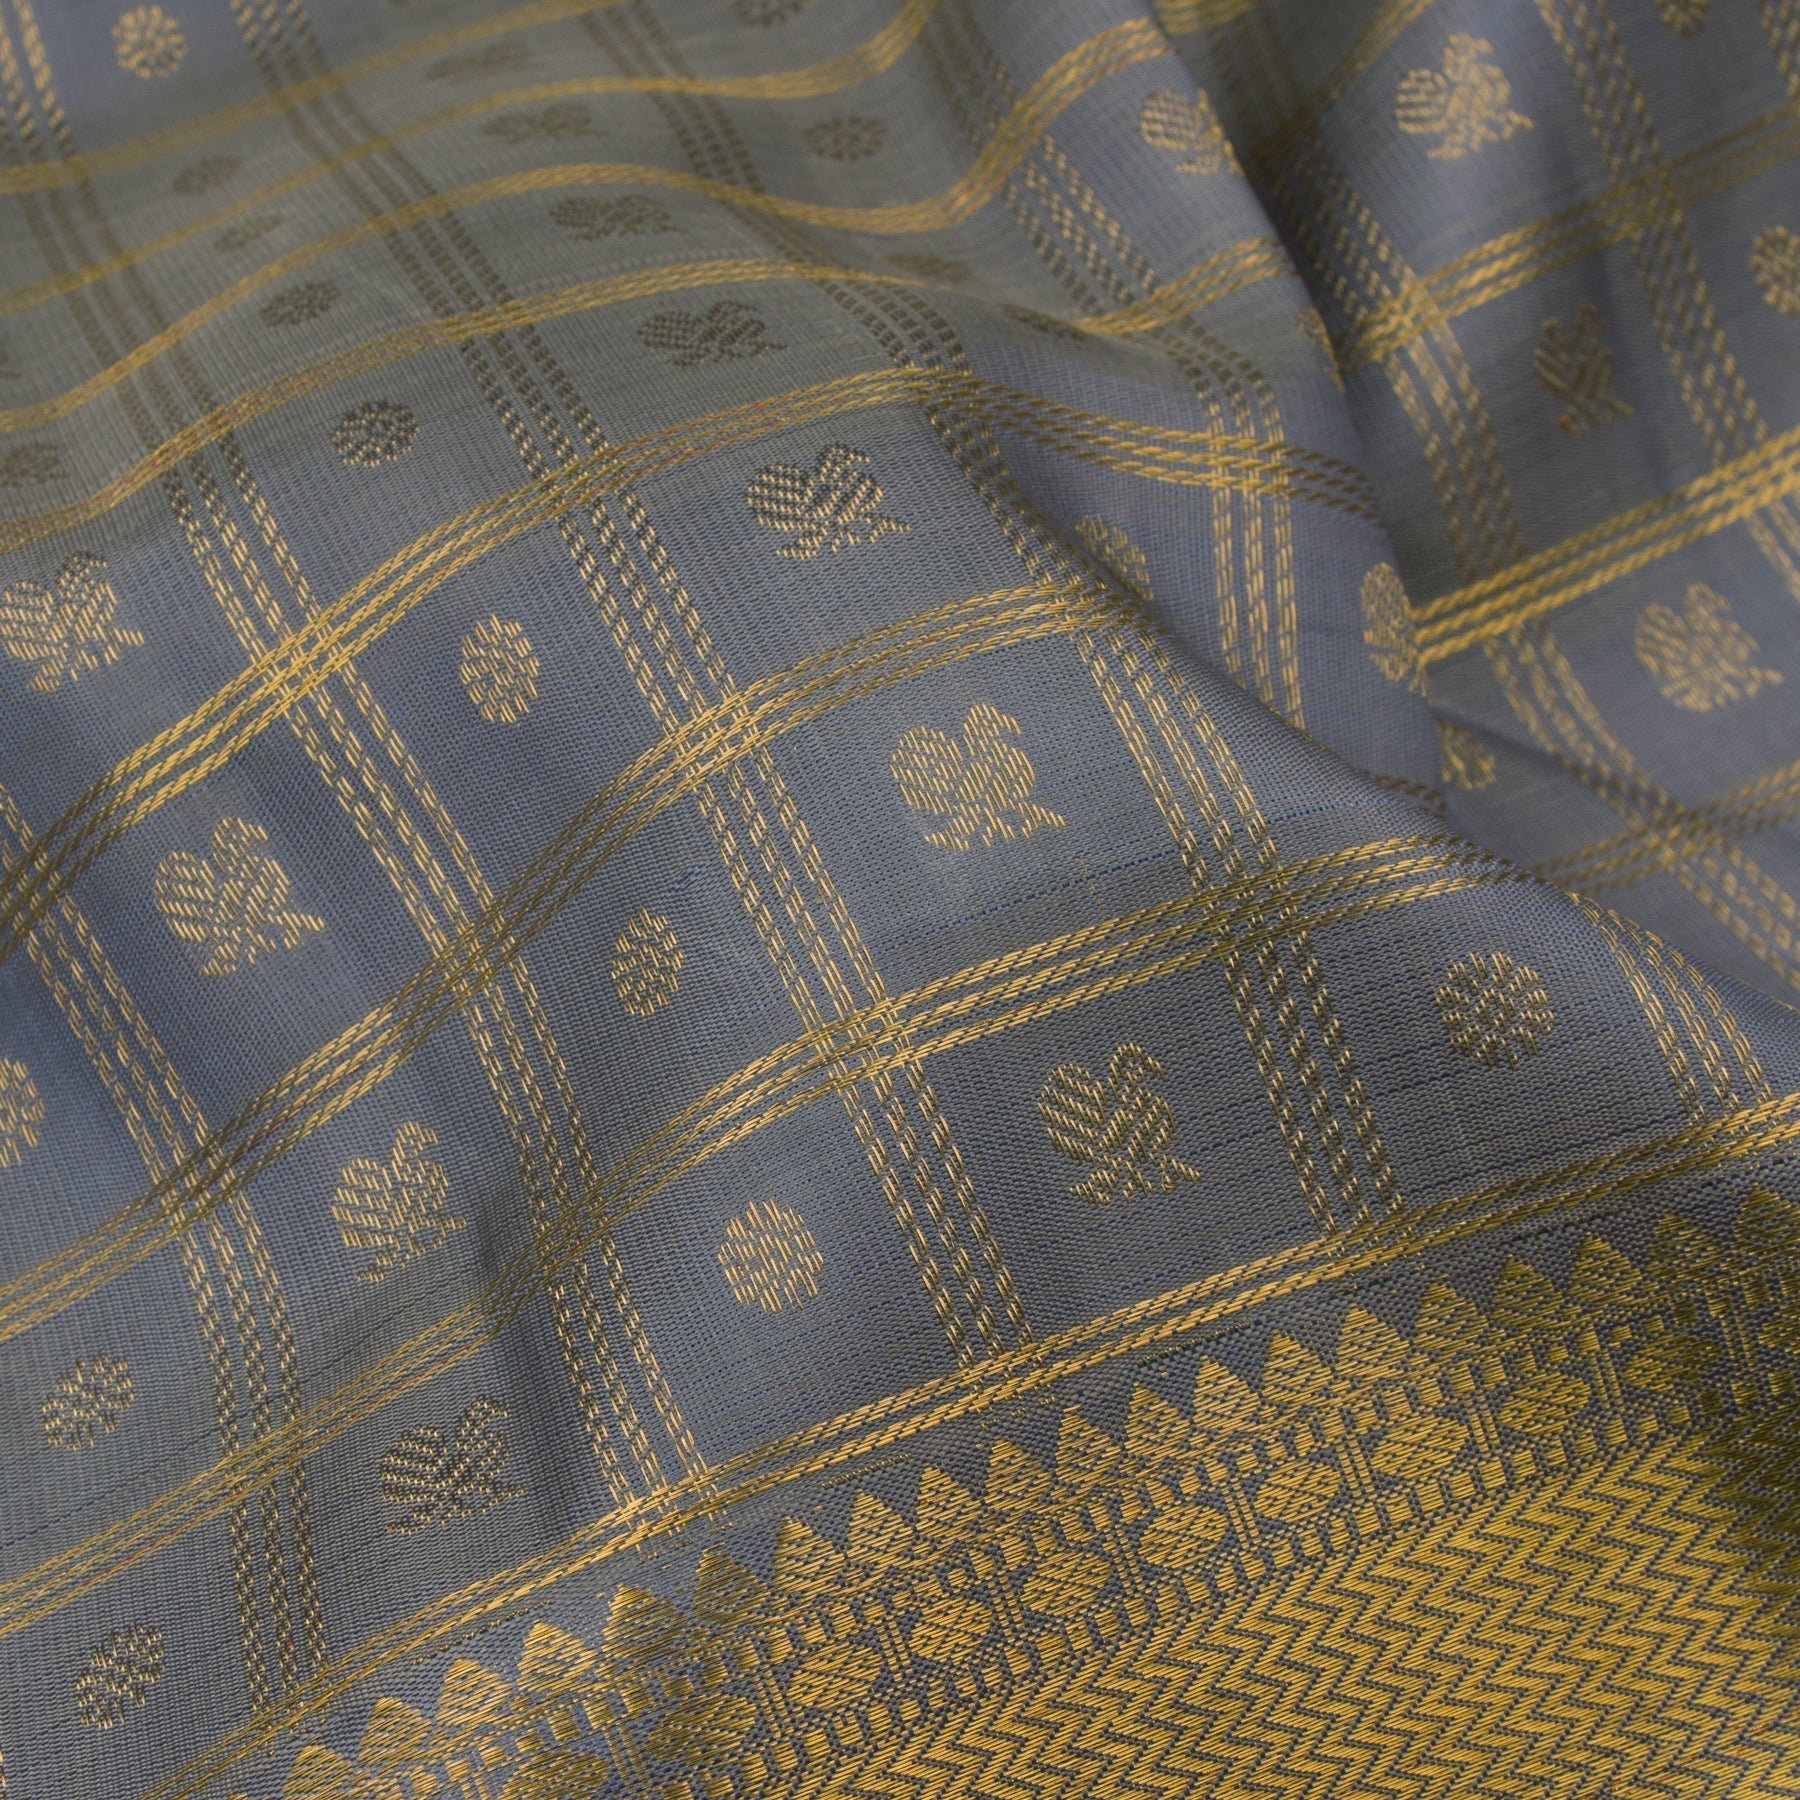 Kanakavalli Kanjivaram Silk Sari 23-611-HS001-01521 - Fabric View